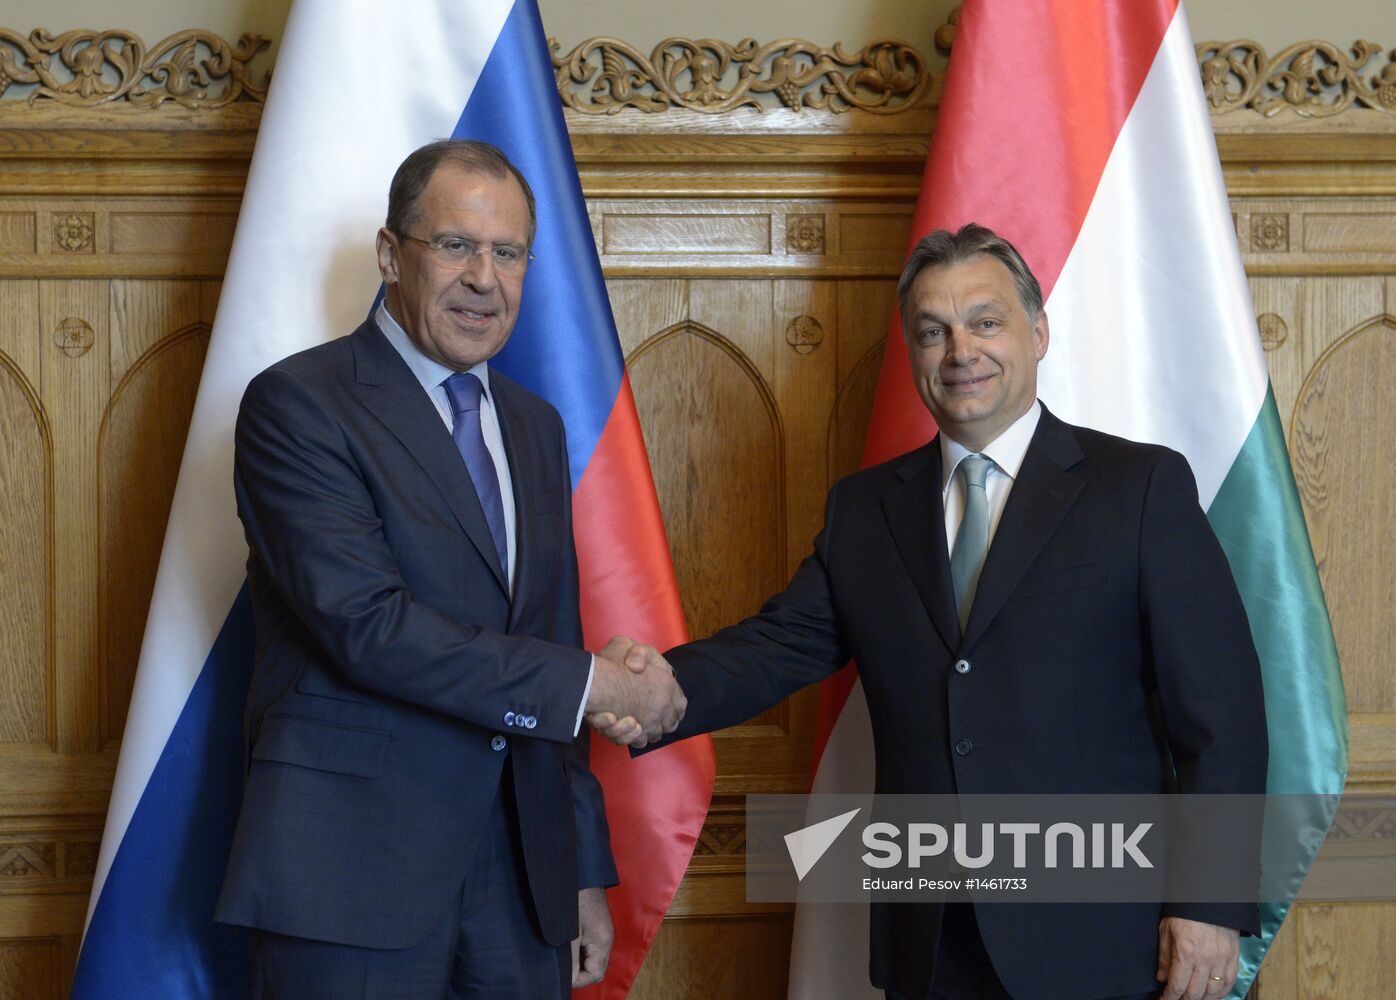 Sergei Lavrov visits Hungary